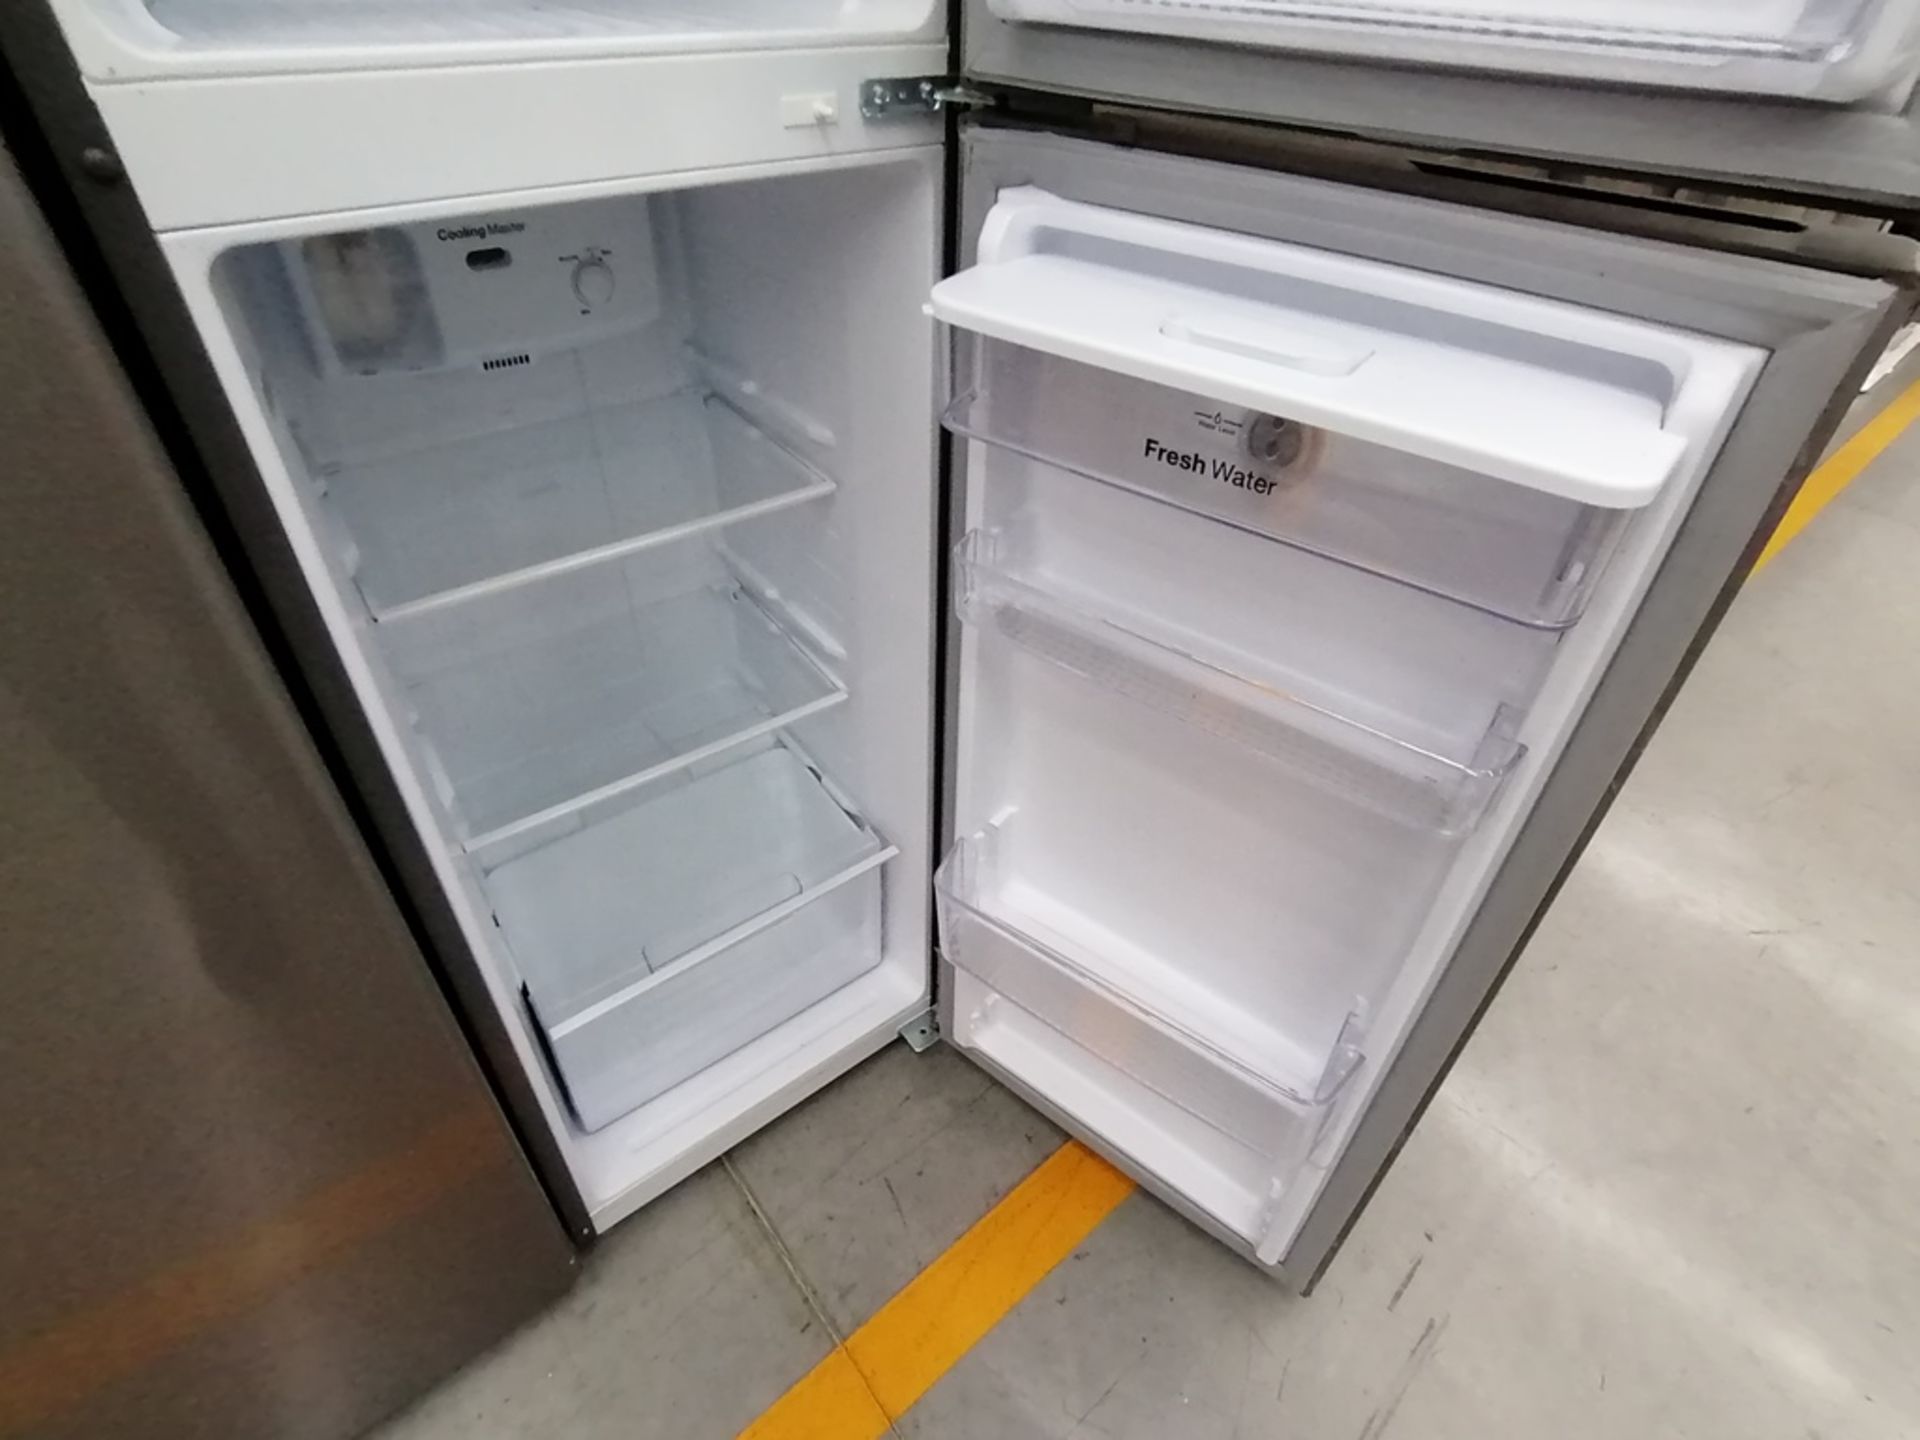 Lote de 2 Refrigeradores incluye: 1 Refrigerador con dispensador de agua, Marca Winia, Modelo DFR32 - Image 12 of 15